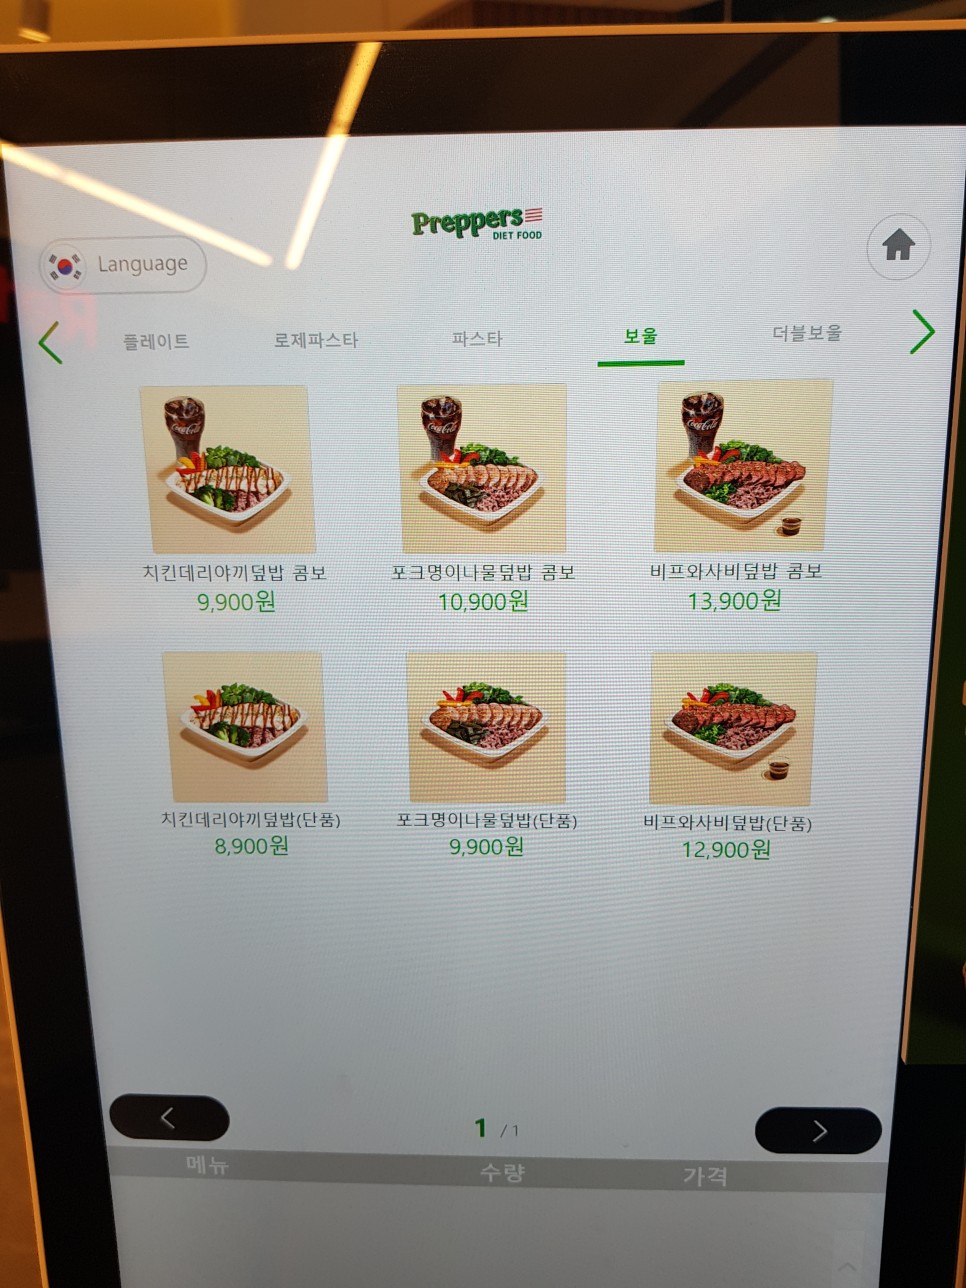 탄단지를 갖춘 웰빙 식단: 성신여대 맛집 - 프레퍼스 다이어트 푸드